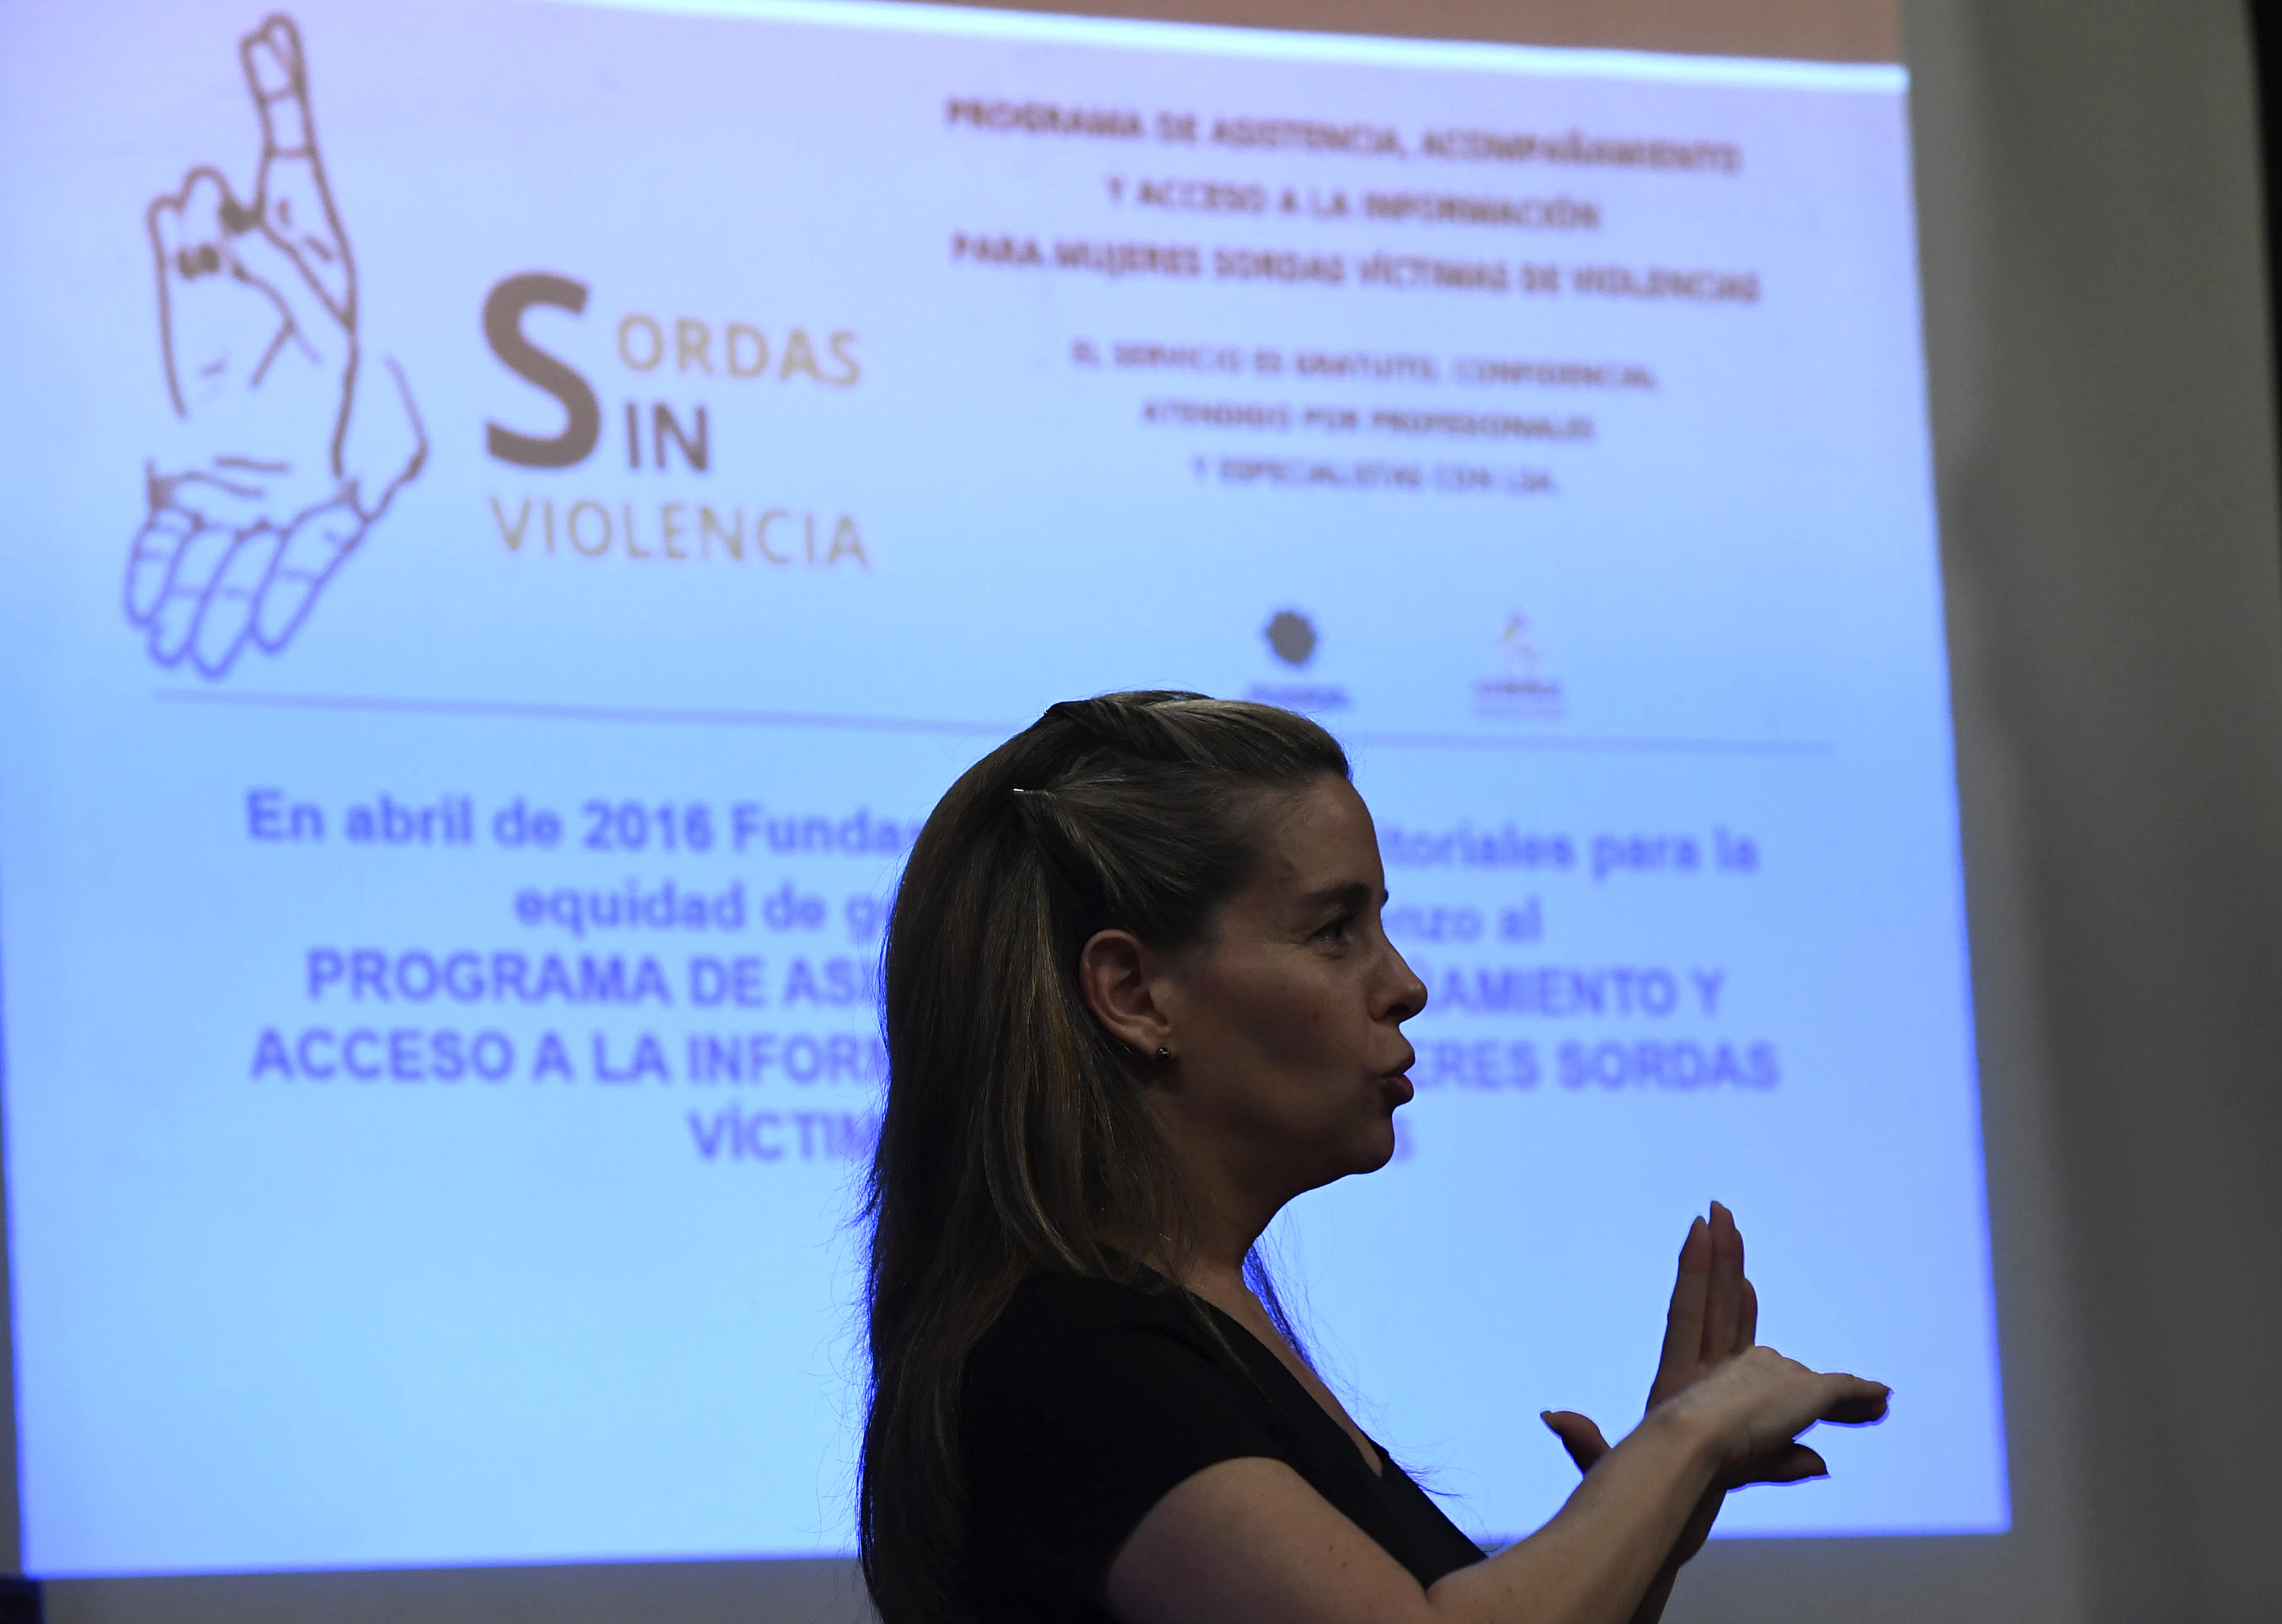 Presentación del Programa Sordas sin Violencia.Fot